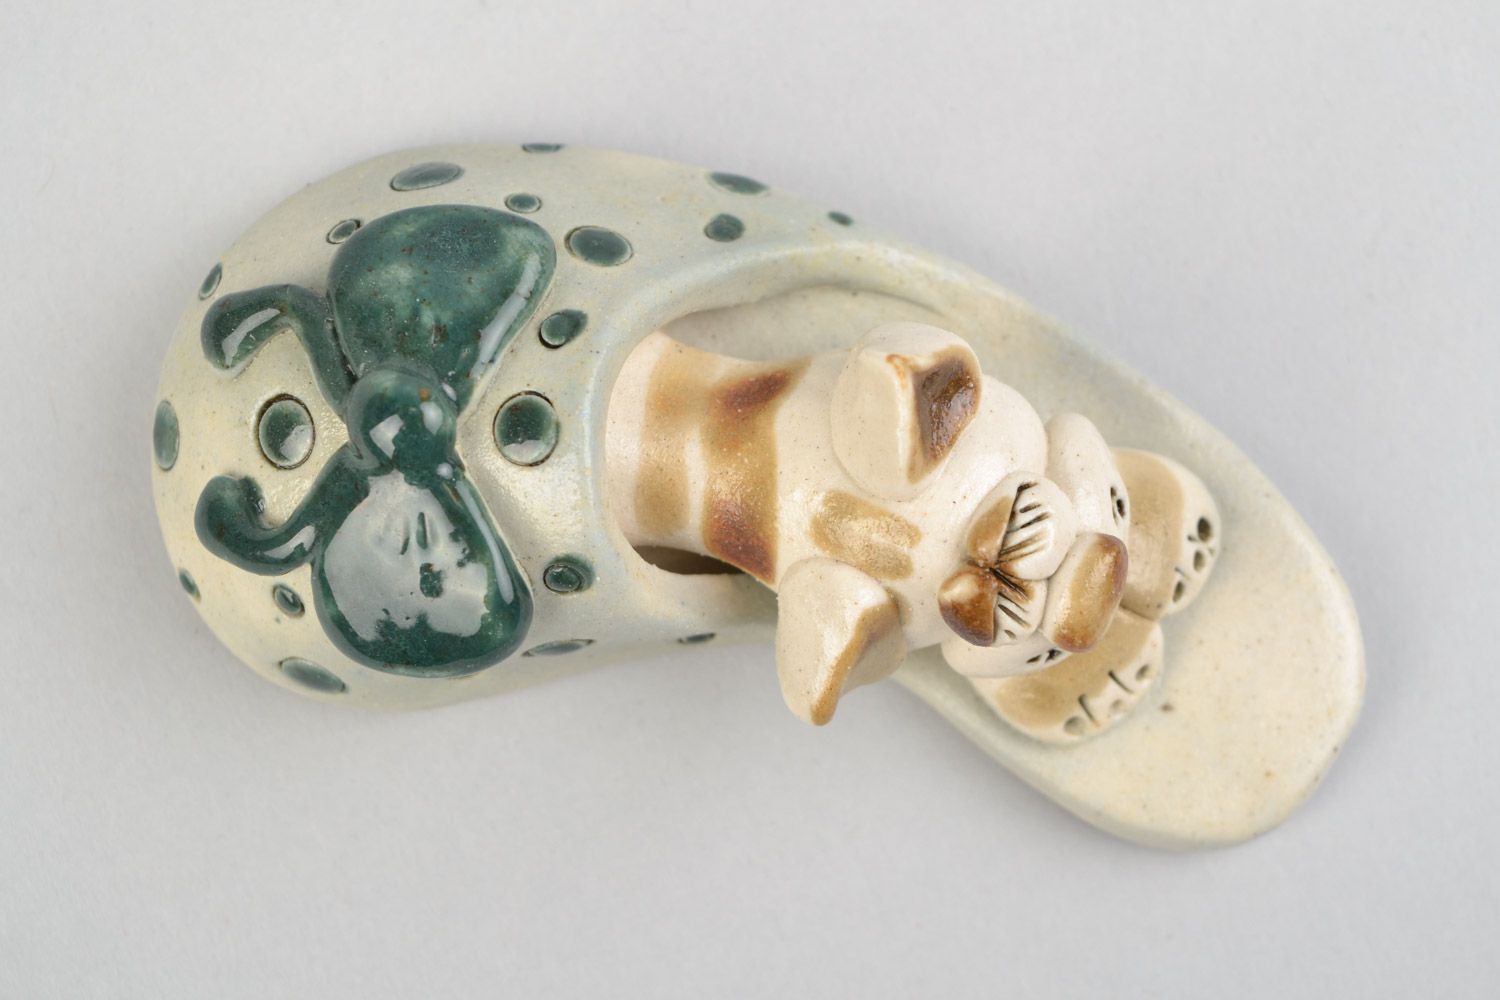 Авторская расписанная глазурью глиняная фигурка кота в тапке ручной работы фото 3